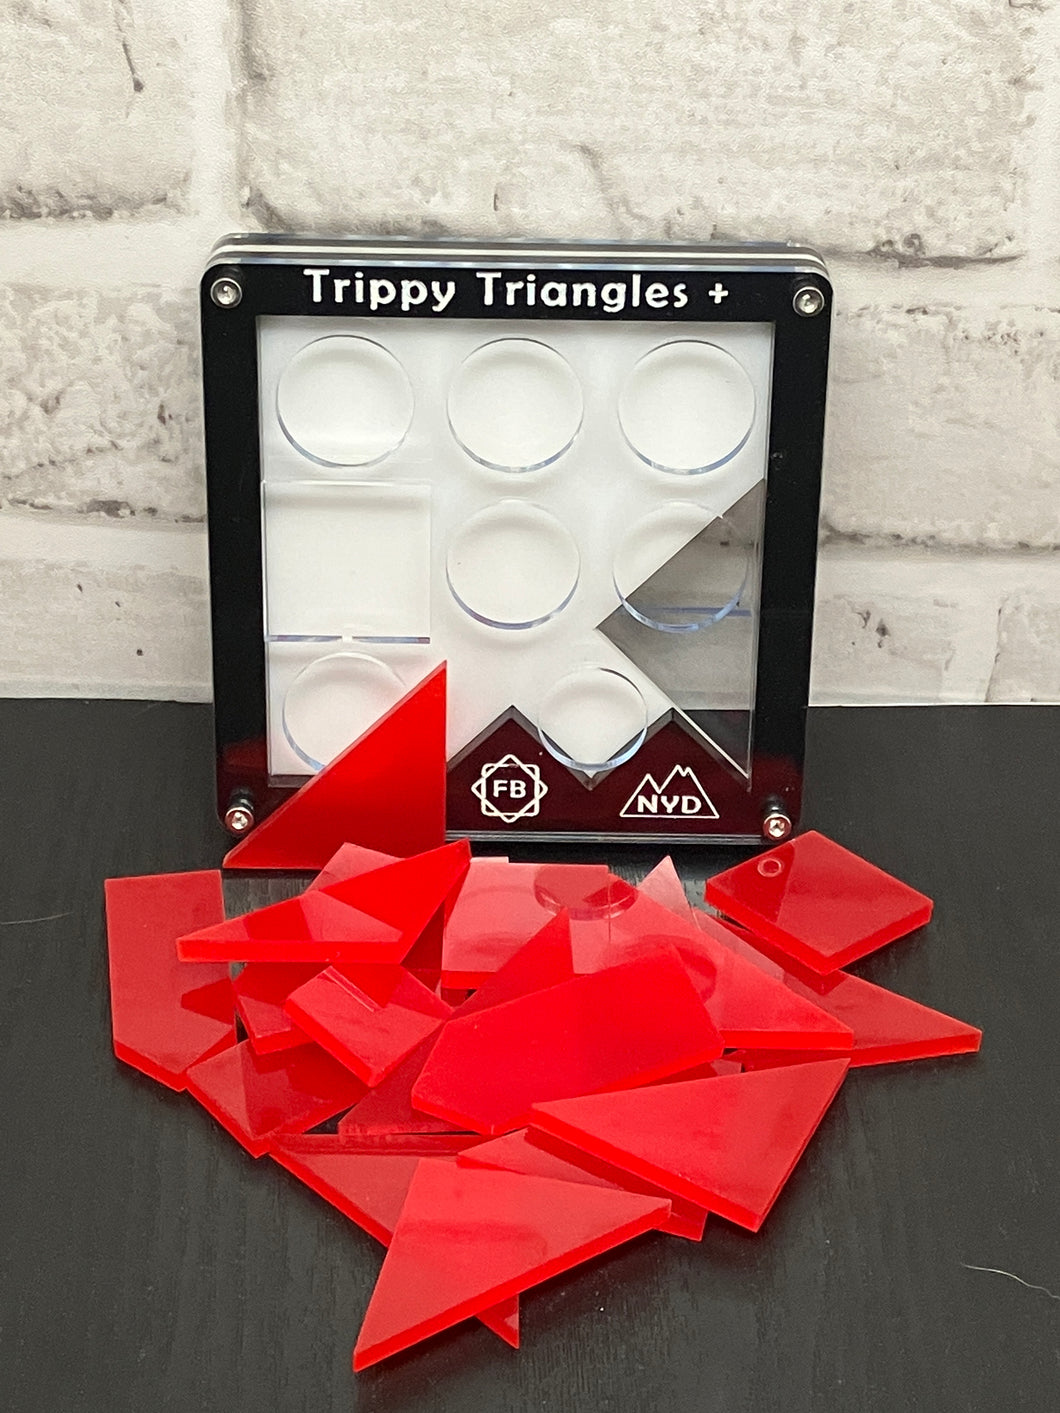 Trippy Triangles Plus